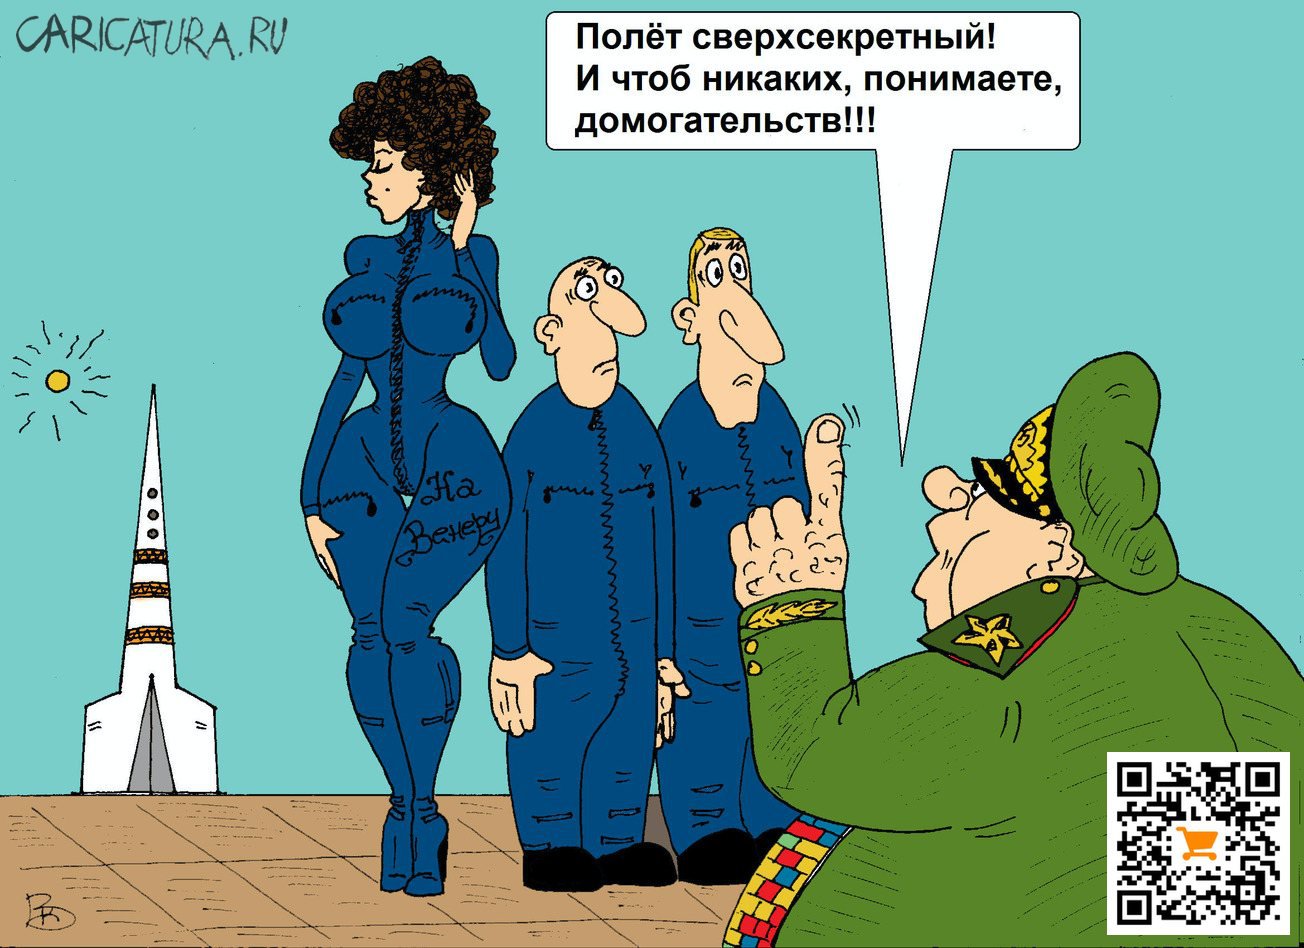 Карикатура "Сверхсекретно", Валерий Каненков